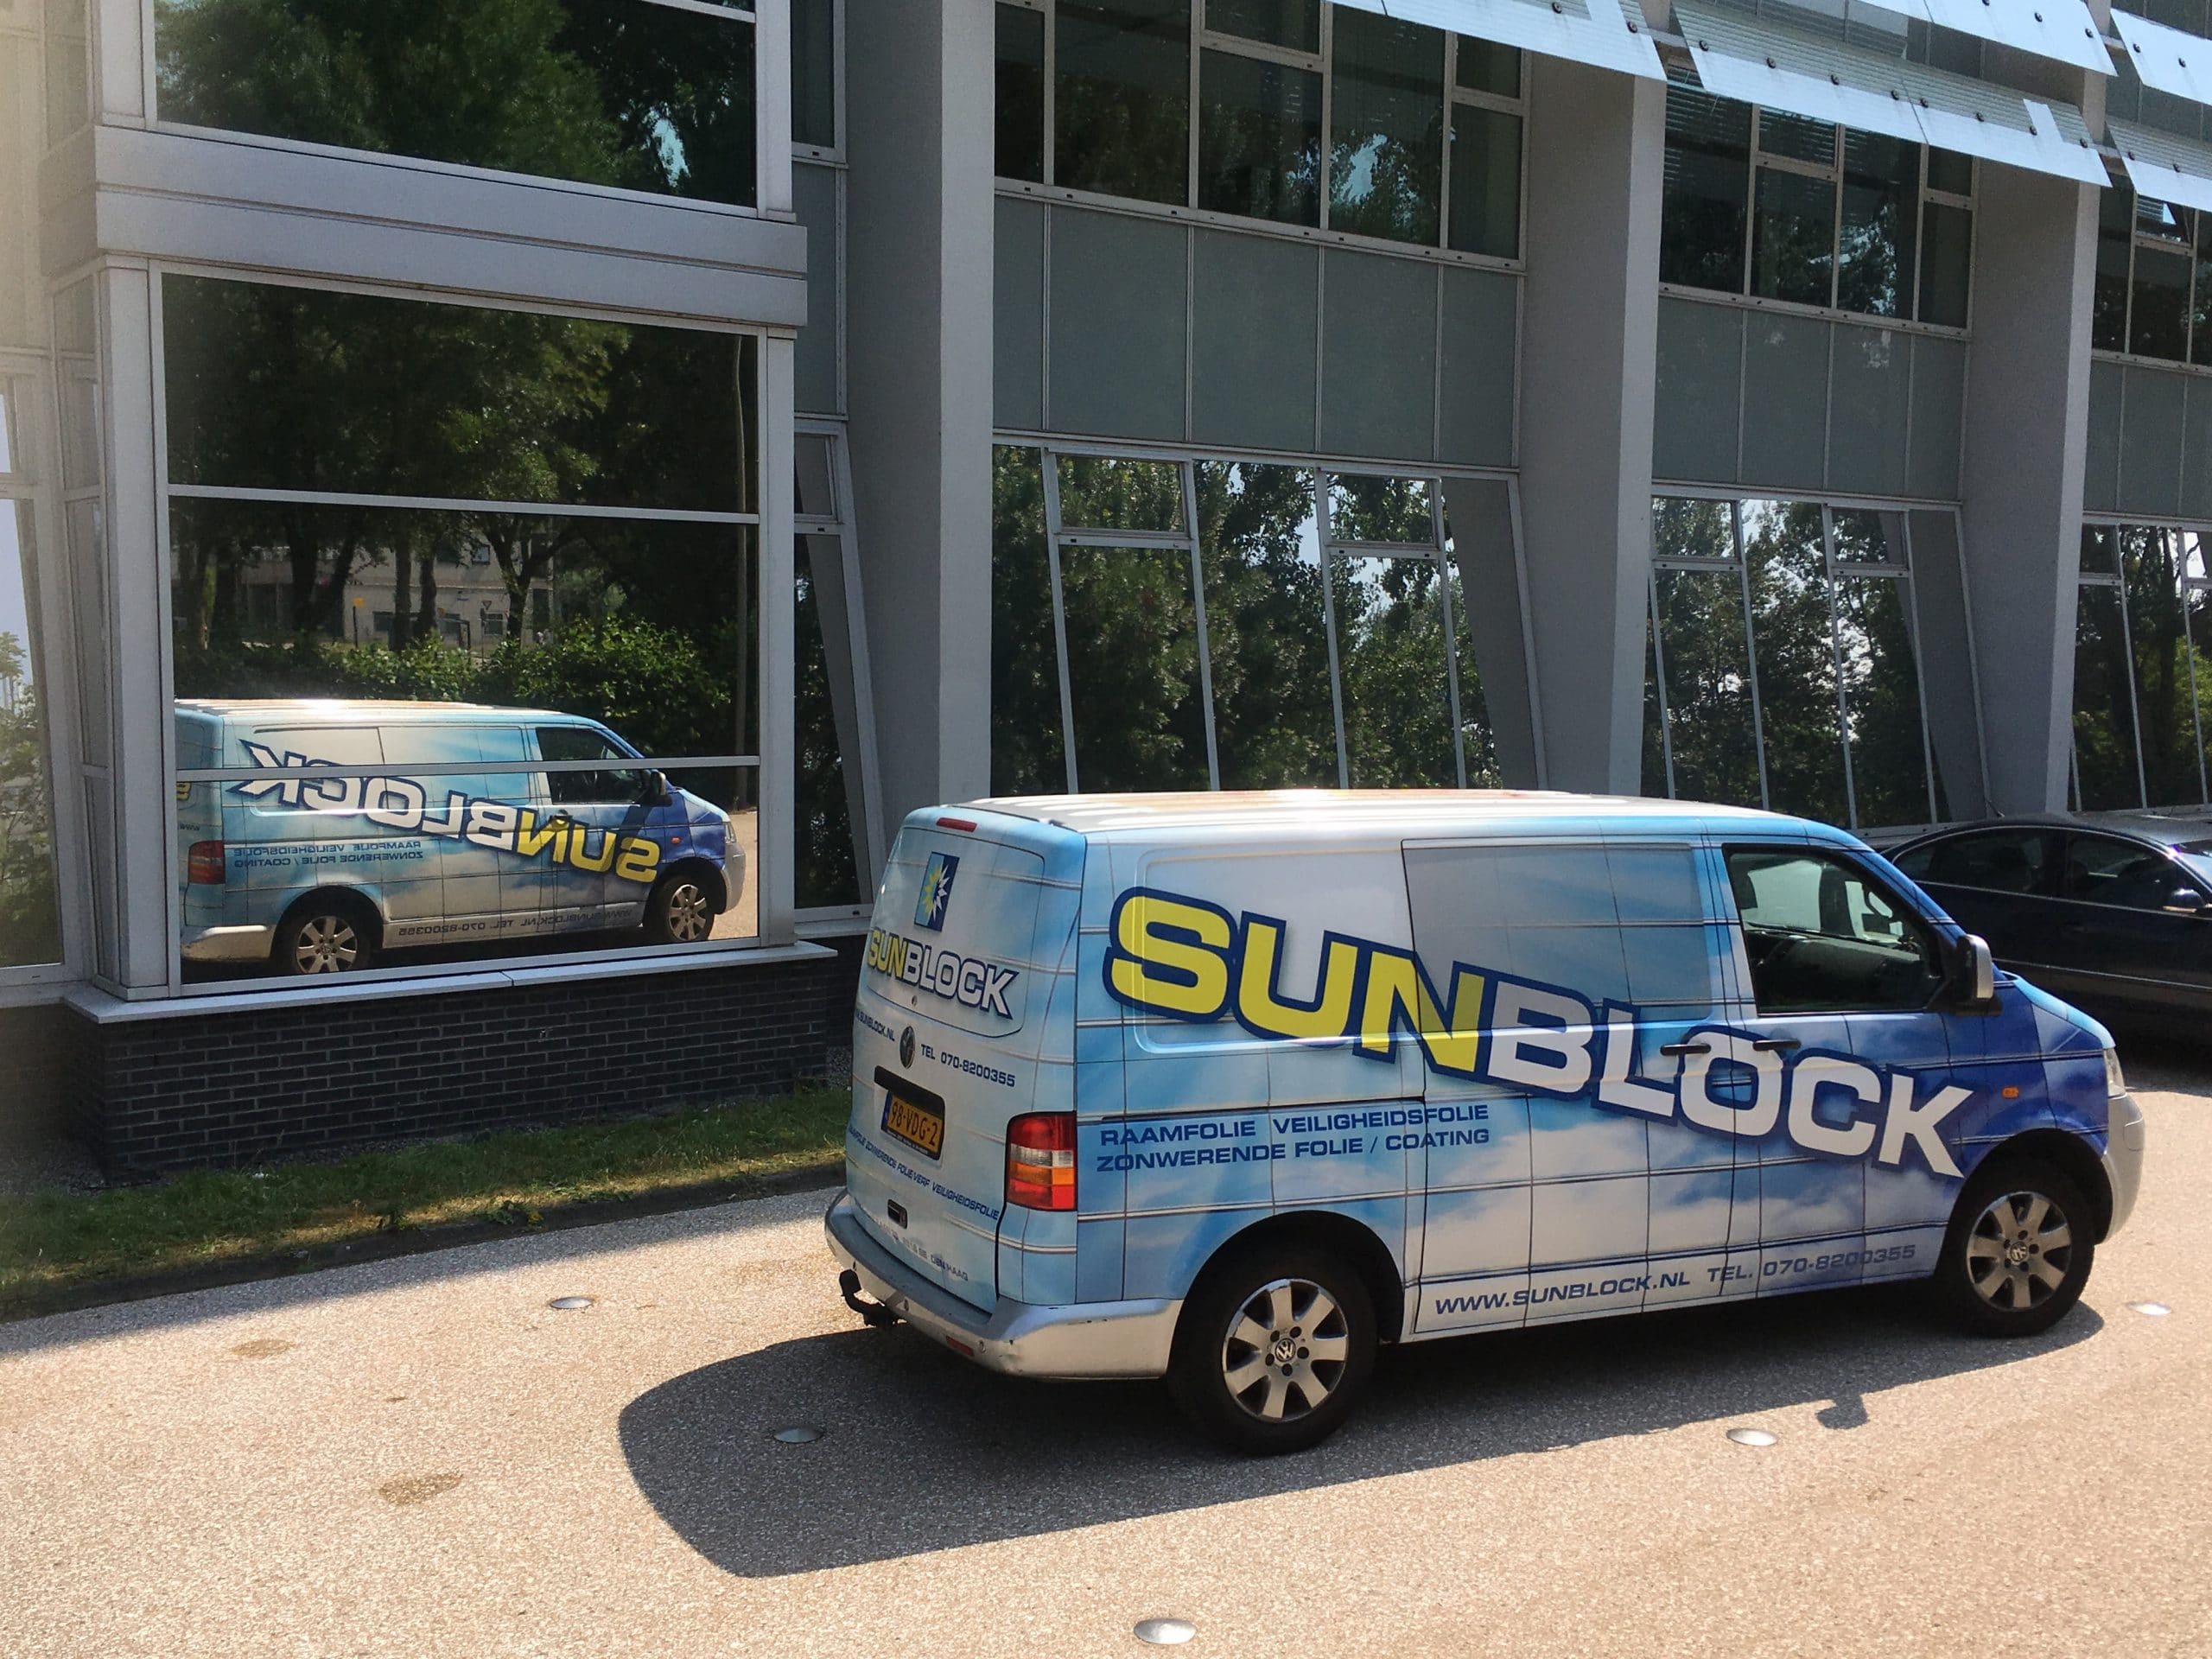 Delft - Bedrijfspand voorzien van  Sunblock Zilver 20 glasfolie teneinde de zonnewarmte tot 86% te reduceren en de hinderlijke schittering op beeldschermen tot 80% te reduceren